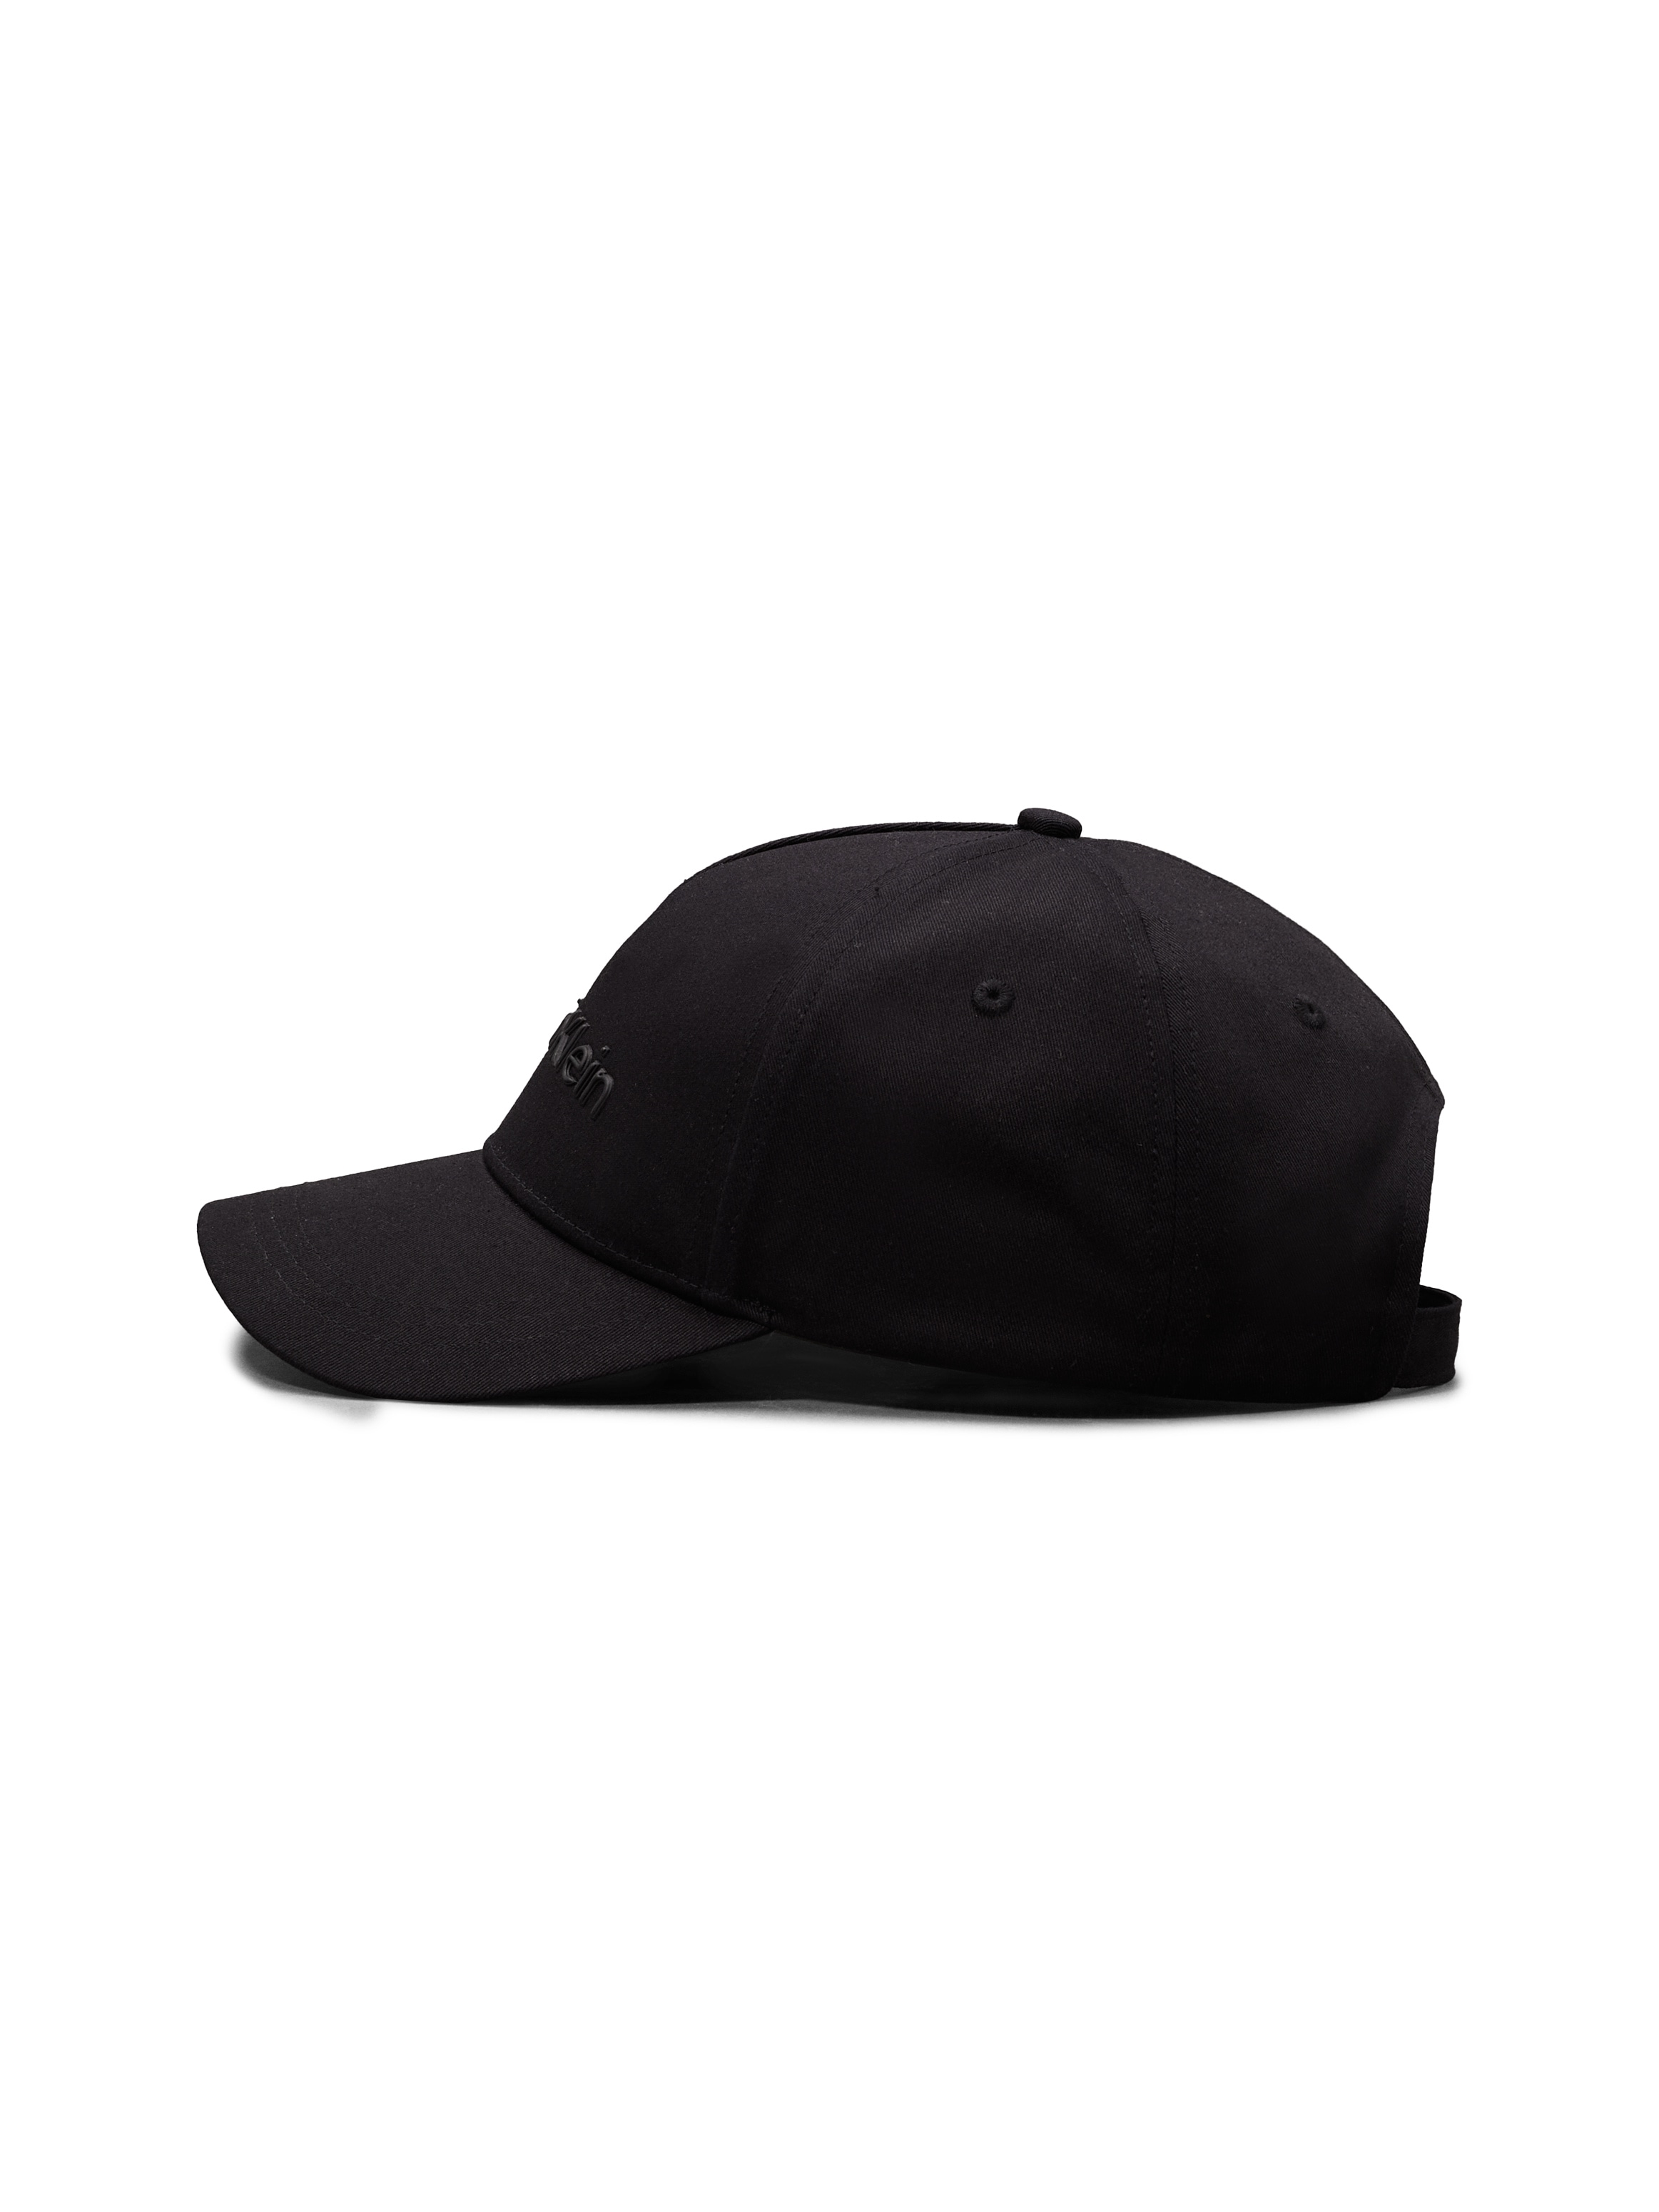 Calvin Klein Baseball Cap »CK MUST BB CAP«, mit Logoschriftzug